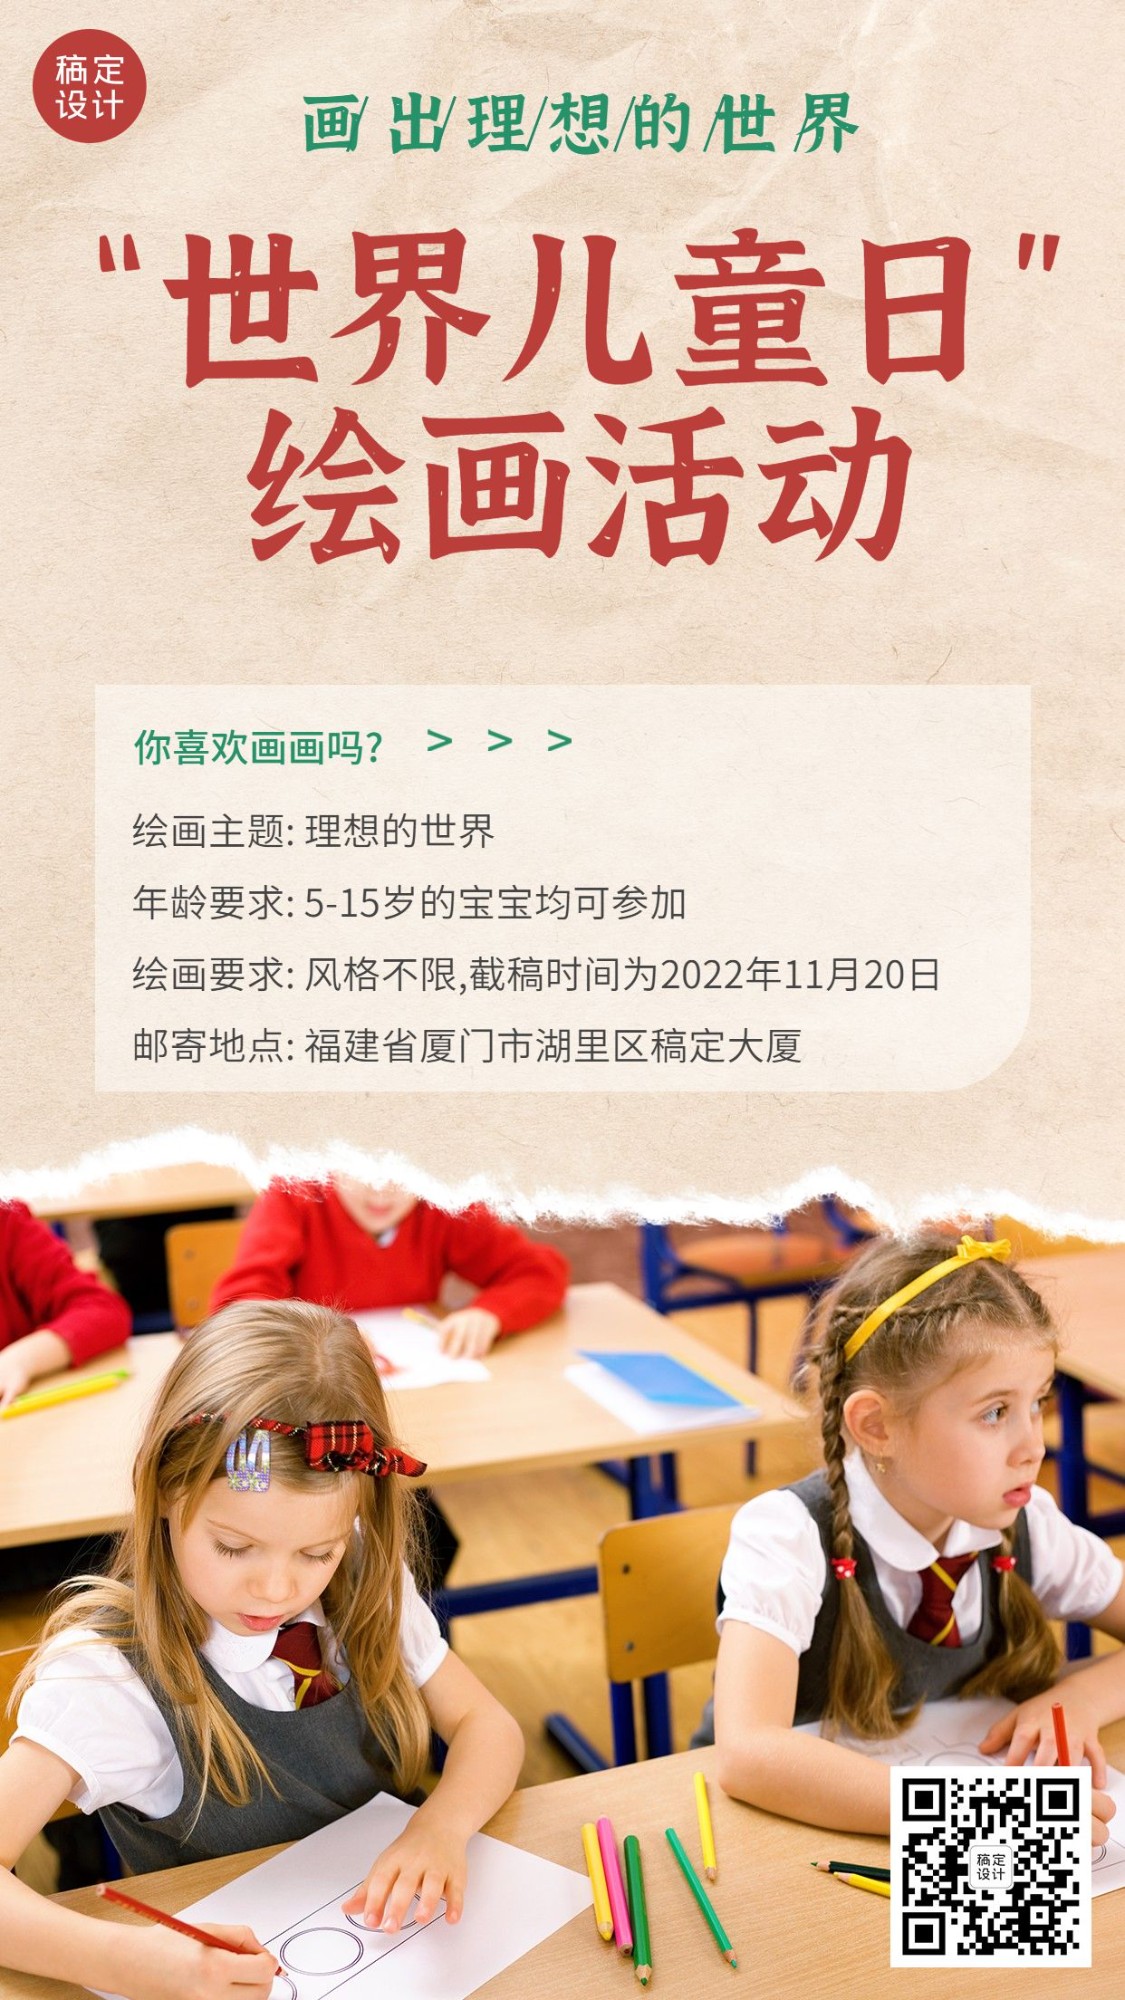 世界儿童日节日活动实景手机海报预览效果